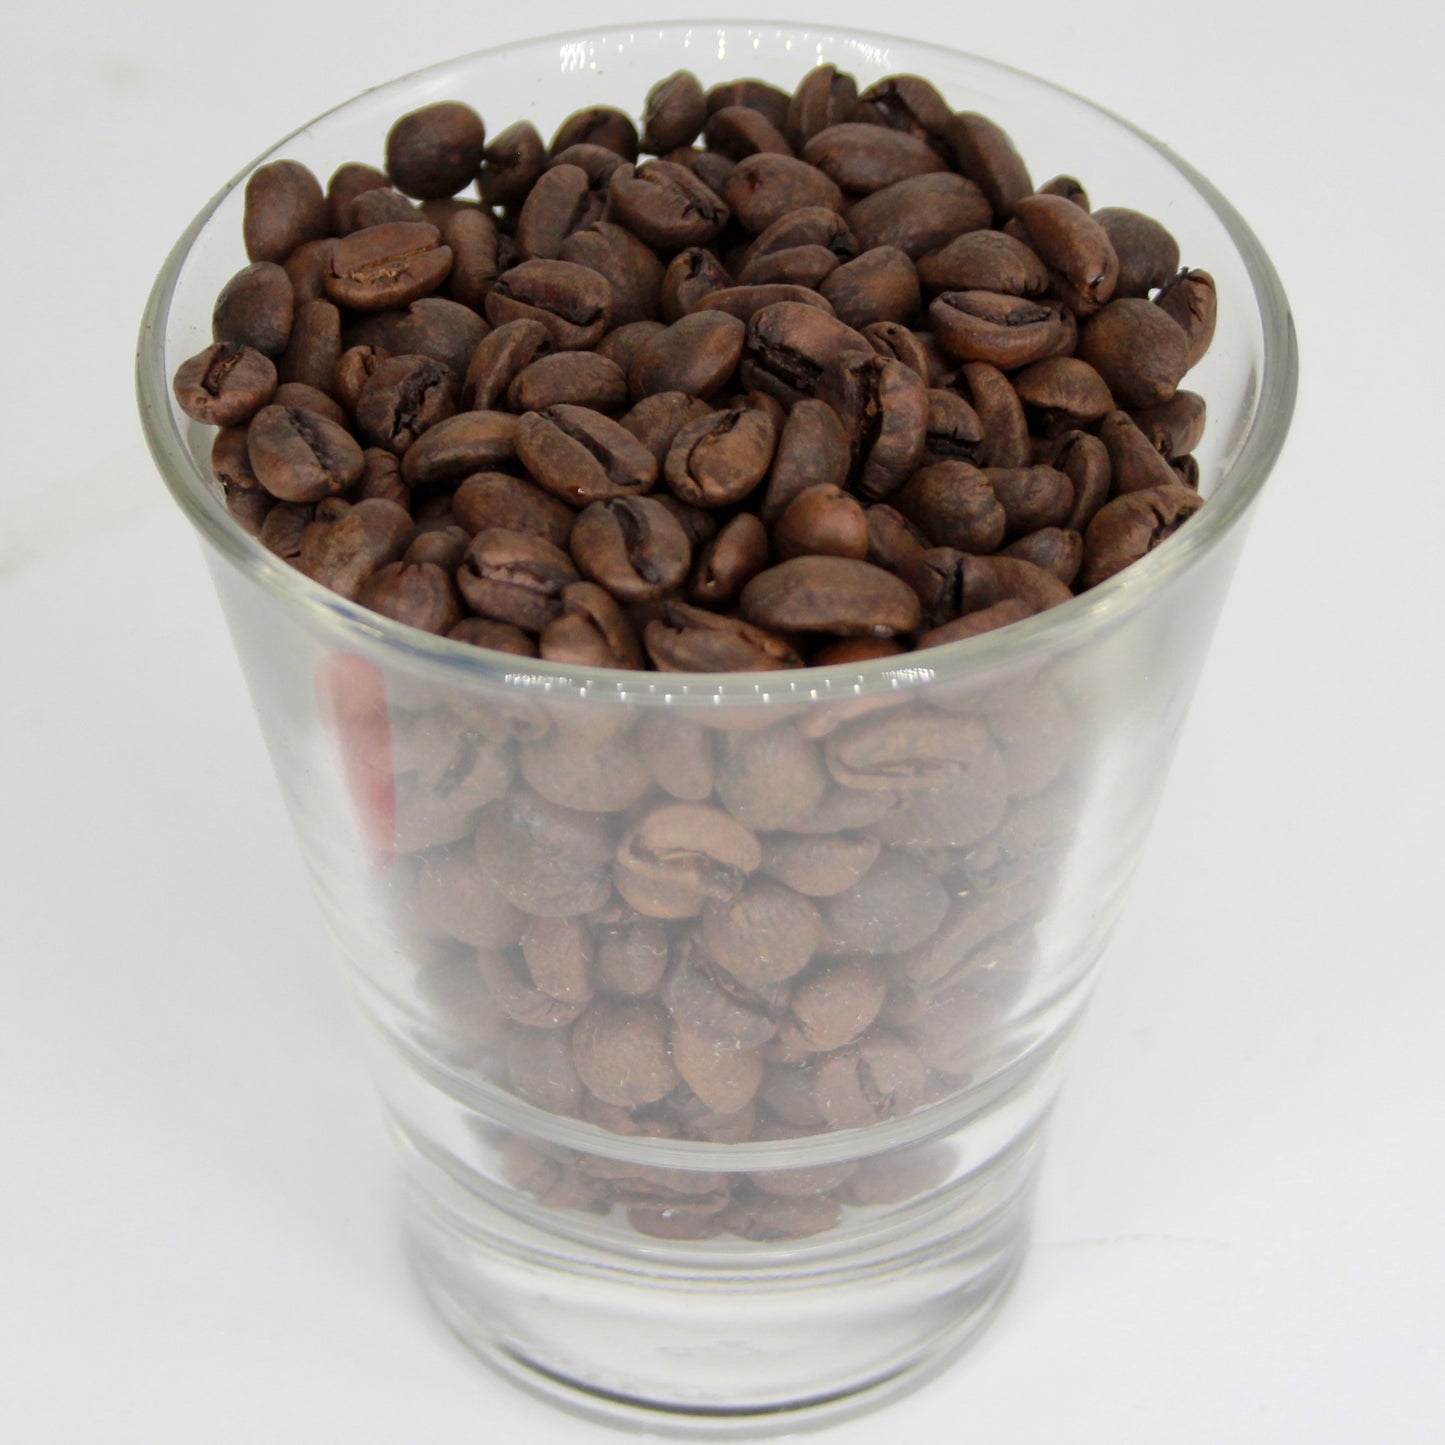 Coffee - Decaf Peru SWP